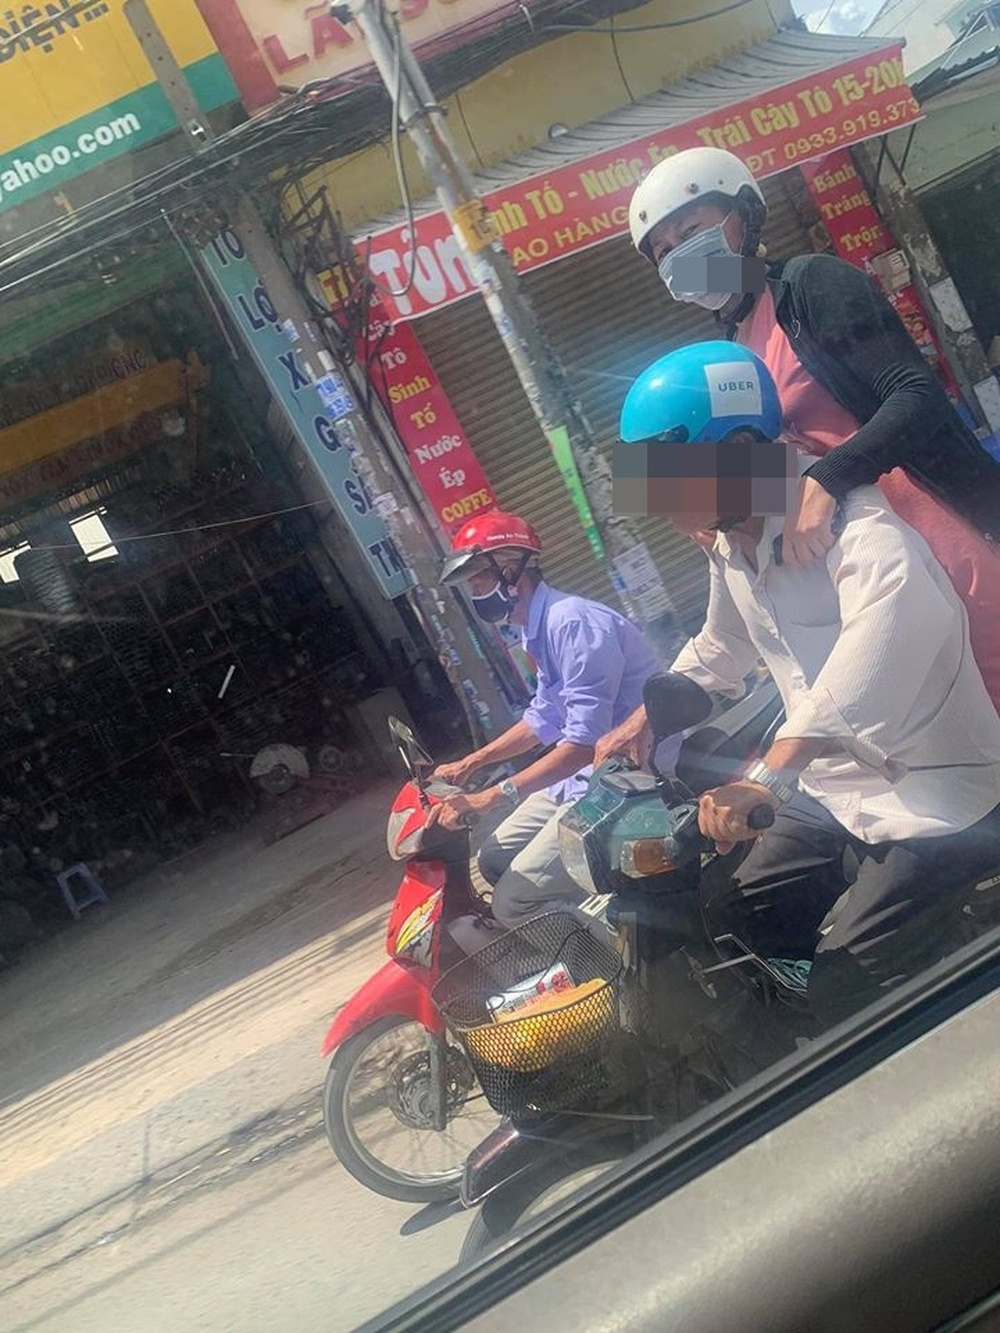 Chạy xe dưới trời nắng nóng, người phụ nữ có cách ngồi khiến cả đường phải ngoái nhìn  - Ảnh 2.